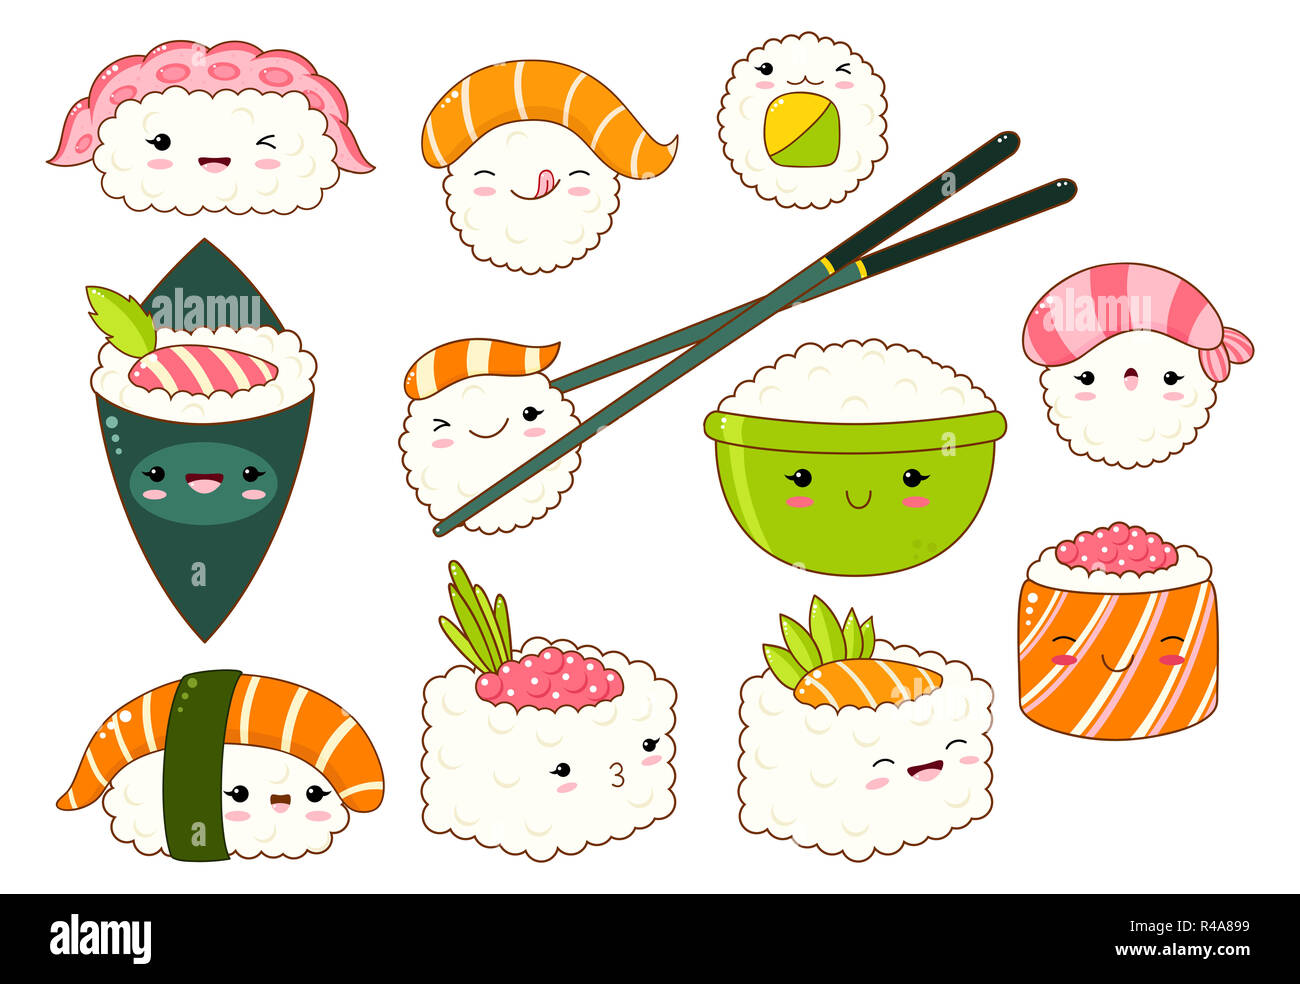 Ensemble de rouleaux de sushi et mignon des icônes dans le style kawaii avec sourire et joues roses. La cuisine traditionnelle japonaise. Temaki, baguettes, nigiri, Banque D'Images